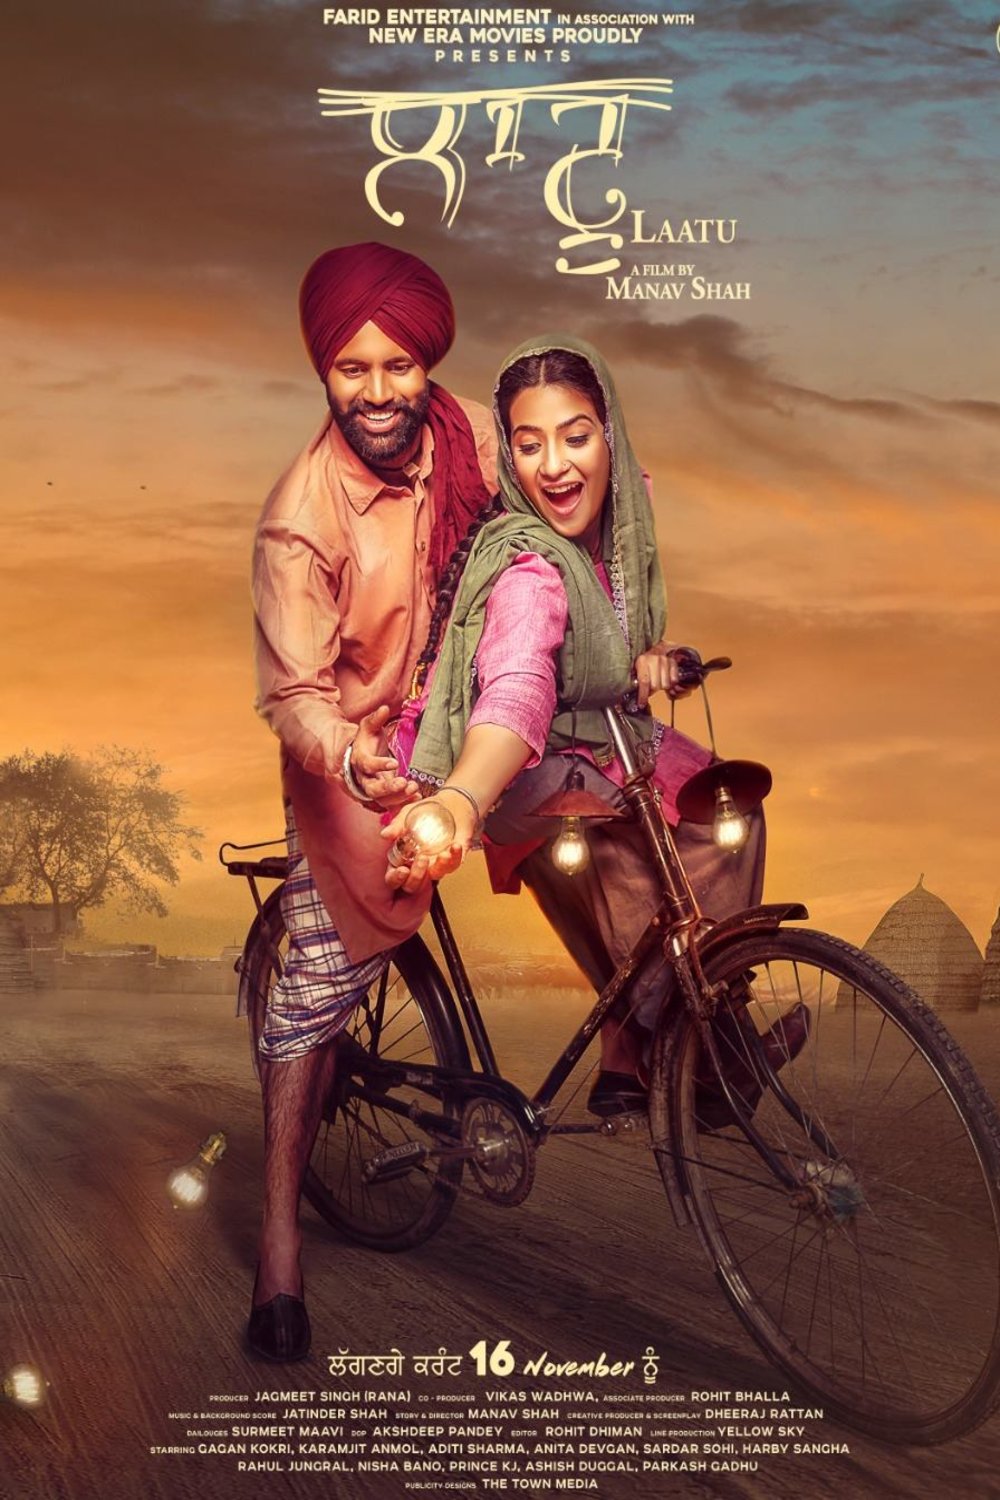 Punjabi poster of the movie Laatu